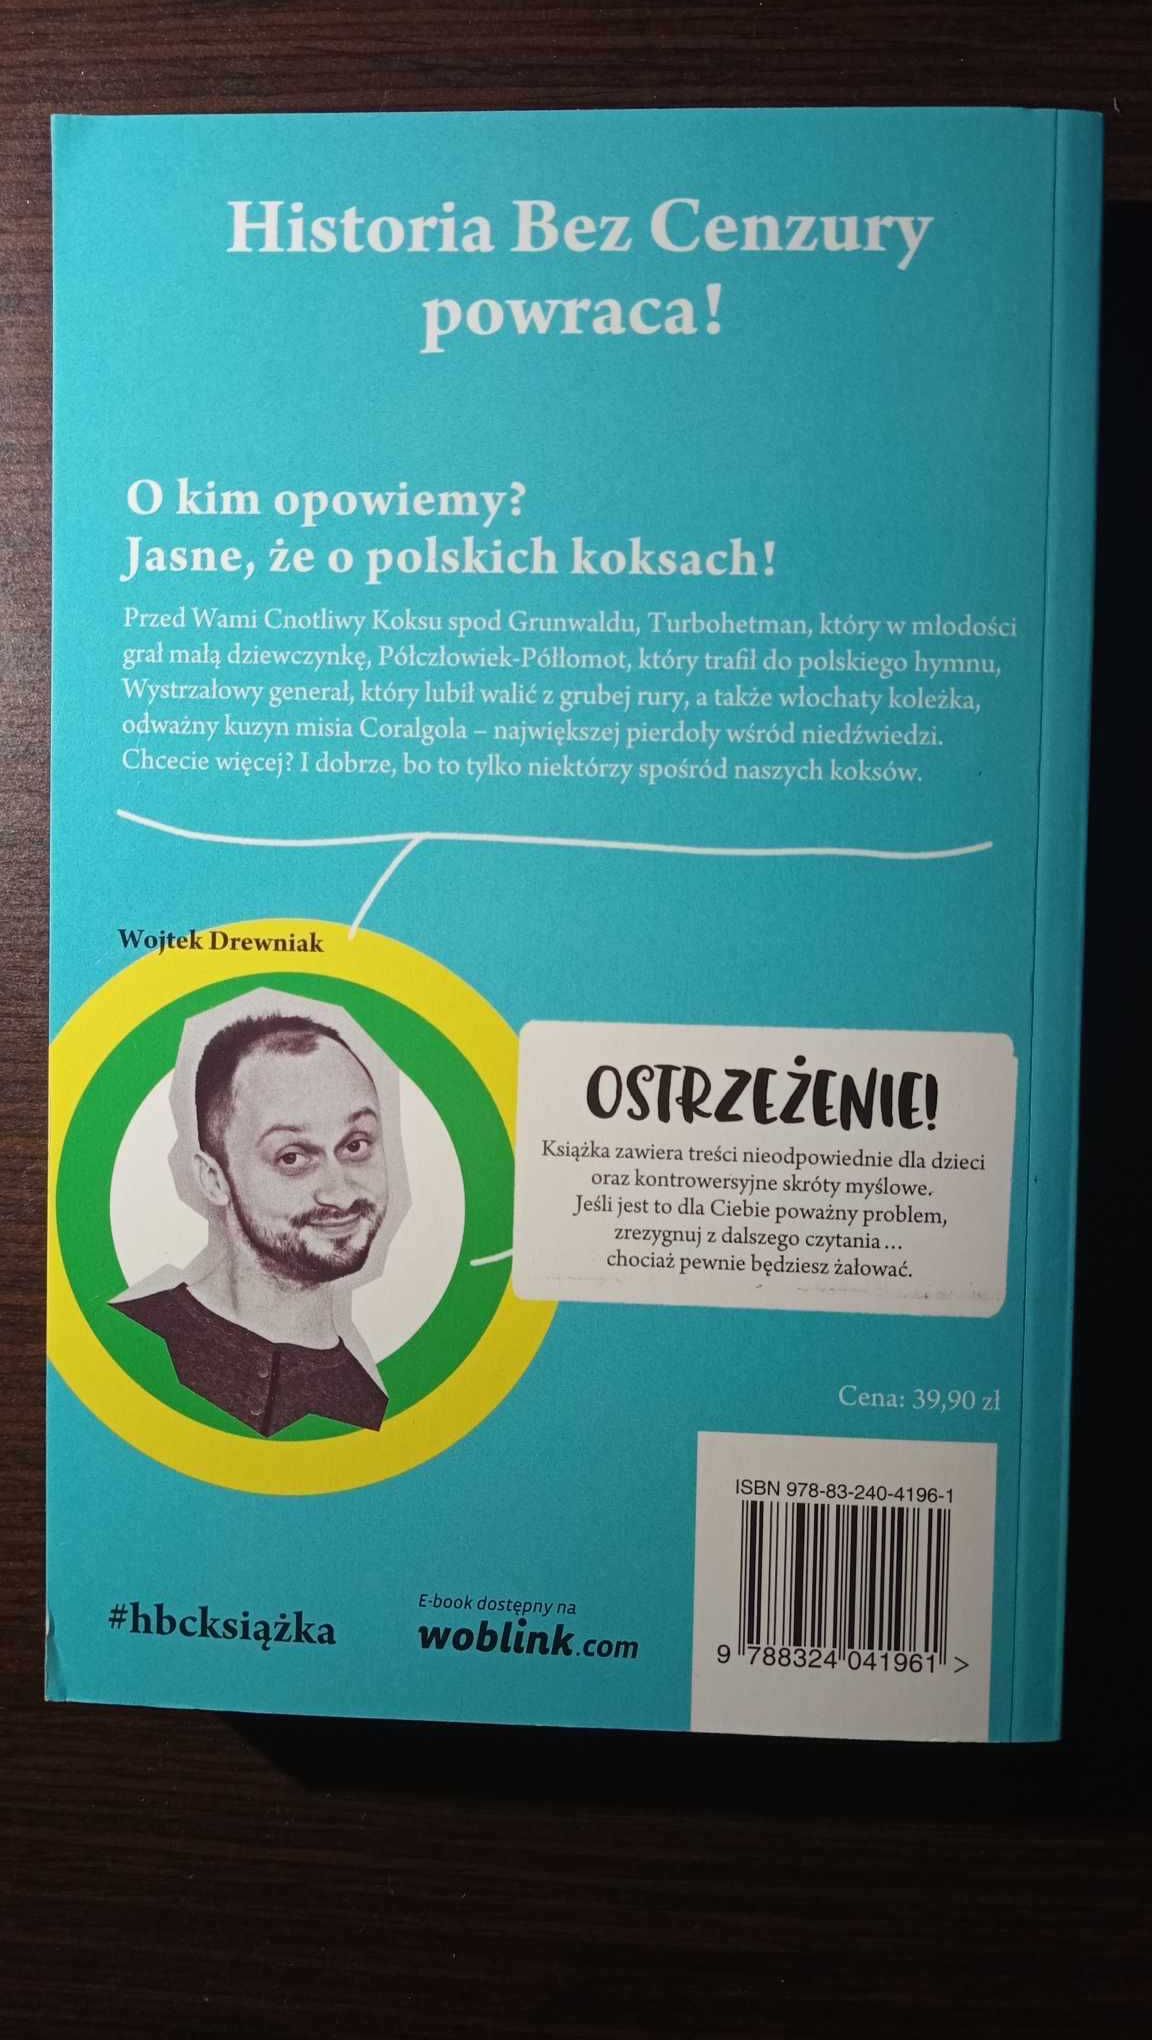 Książka "Historia bez cenzury" cz. 2, Wojciech Drewniak